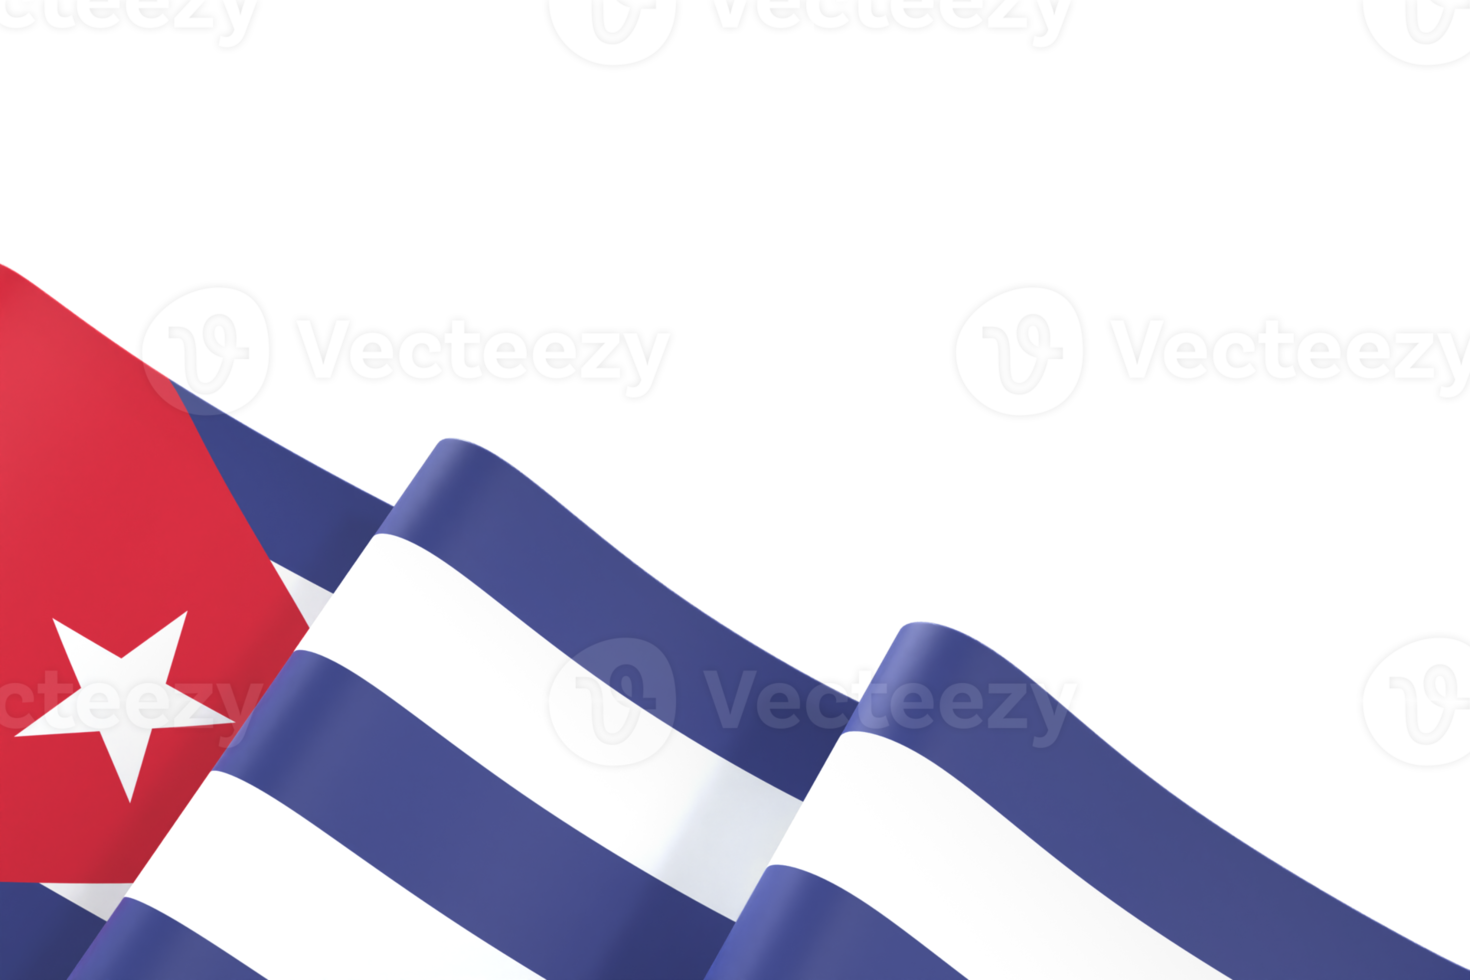 diseño de bandera de cuba día de la independencia nacional elemento de banner fondo transparente png